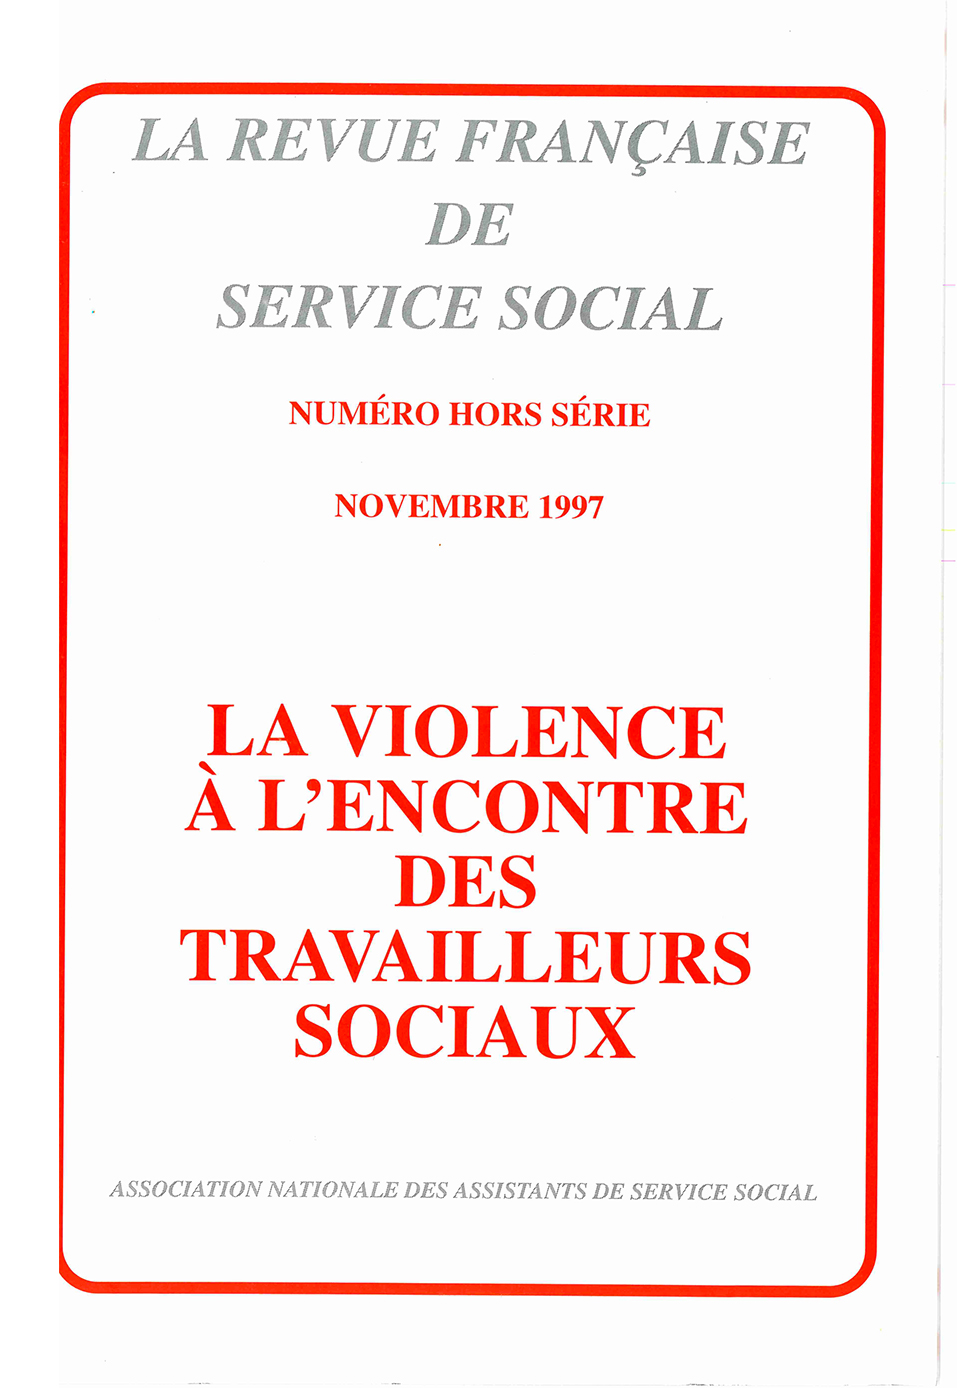 Hors-série Novembre 1997 : "La violence à l'encontre des travailleurs sociaux"